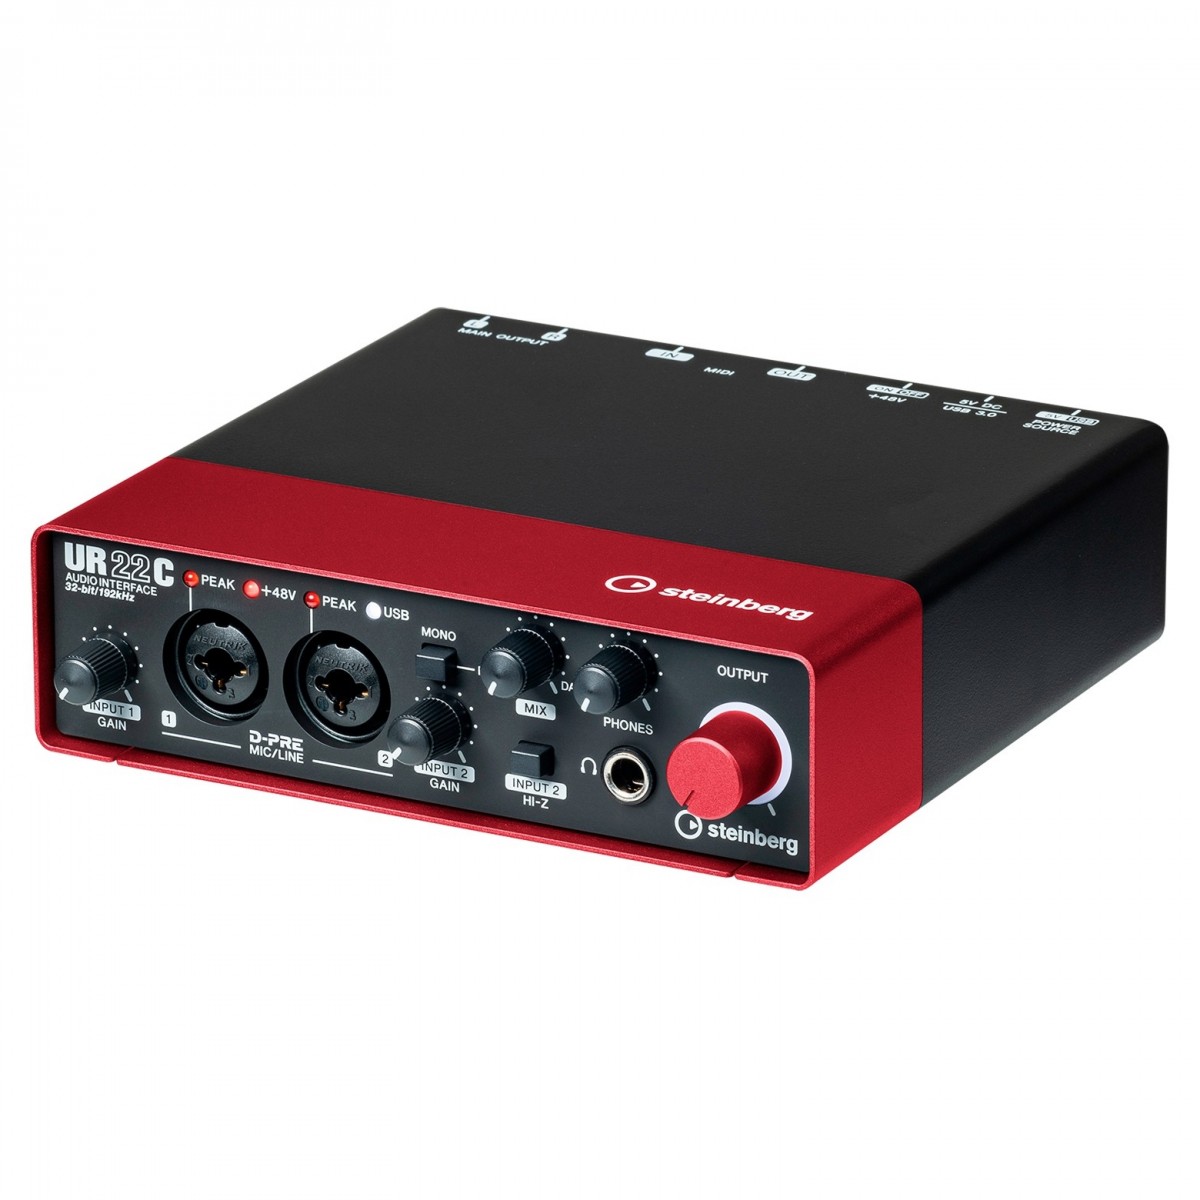 STEINBERG UR22C RED INTERFACCIA AUDIO USB 3.0 MIDI 2 CANALI CON D-PRE 24BIT 192Khz COLORE ROSSO 1